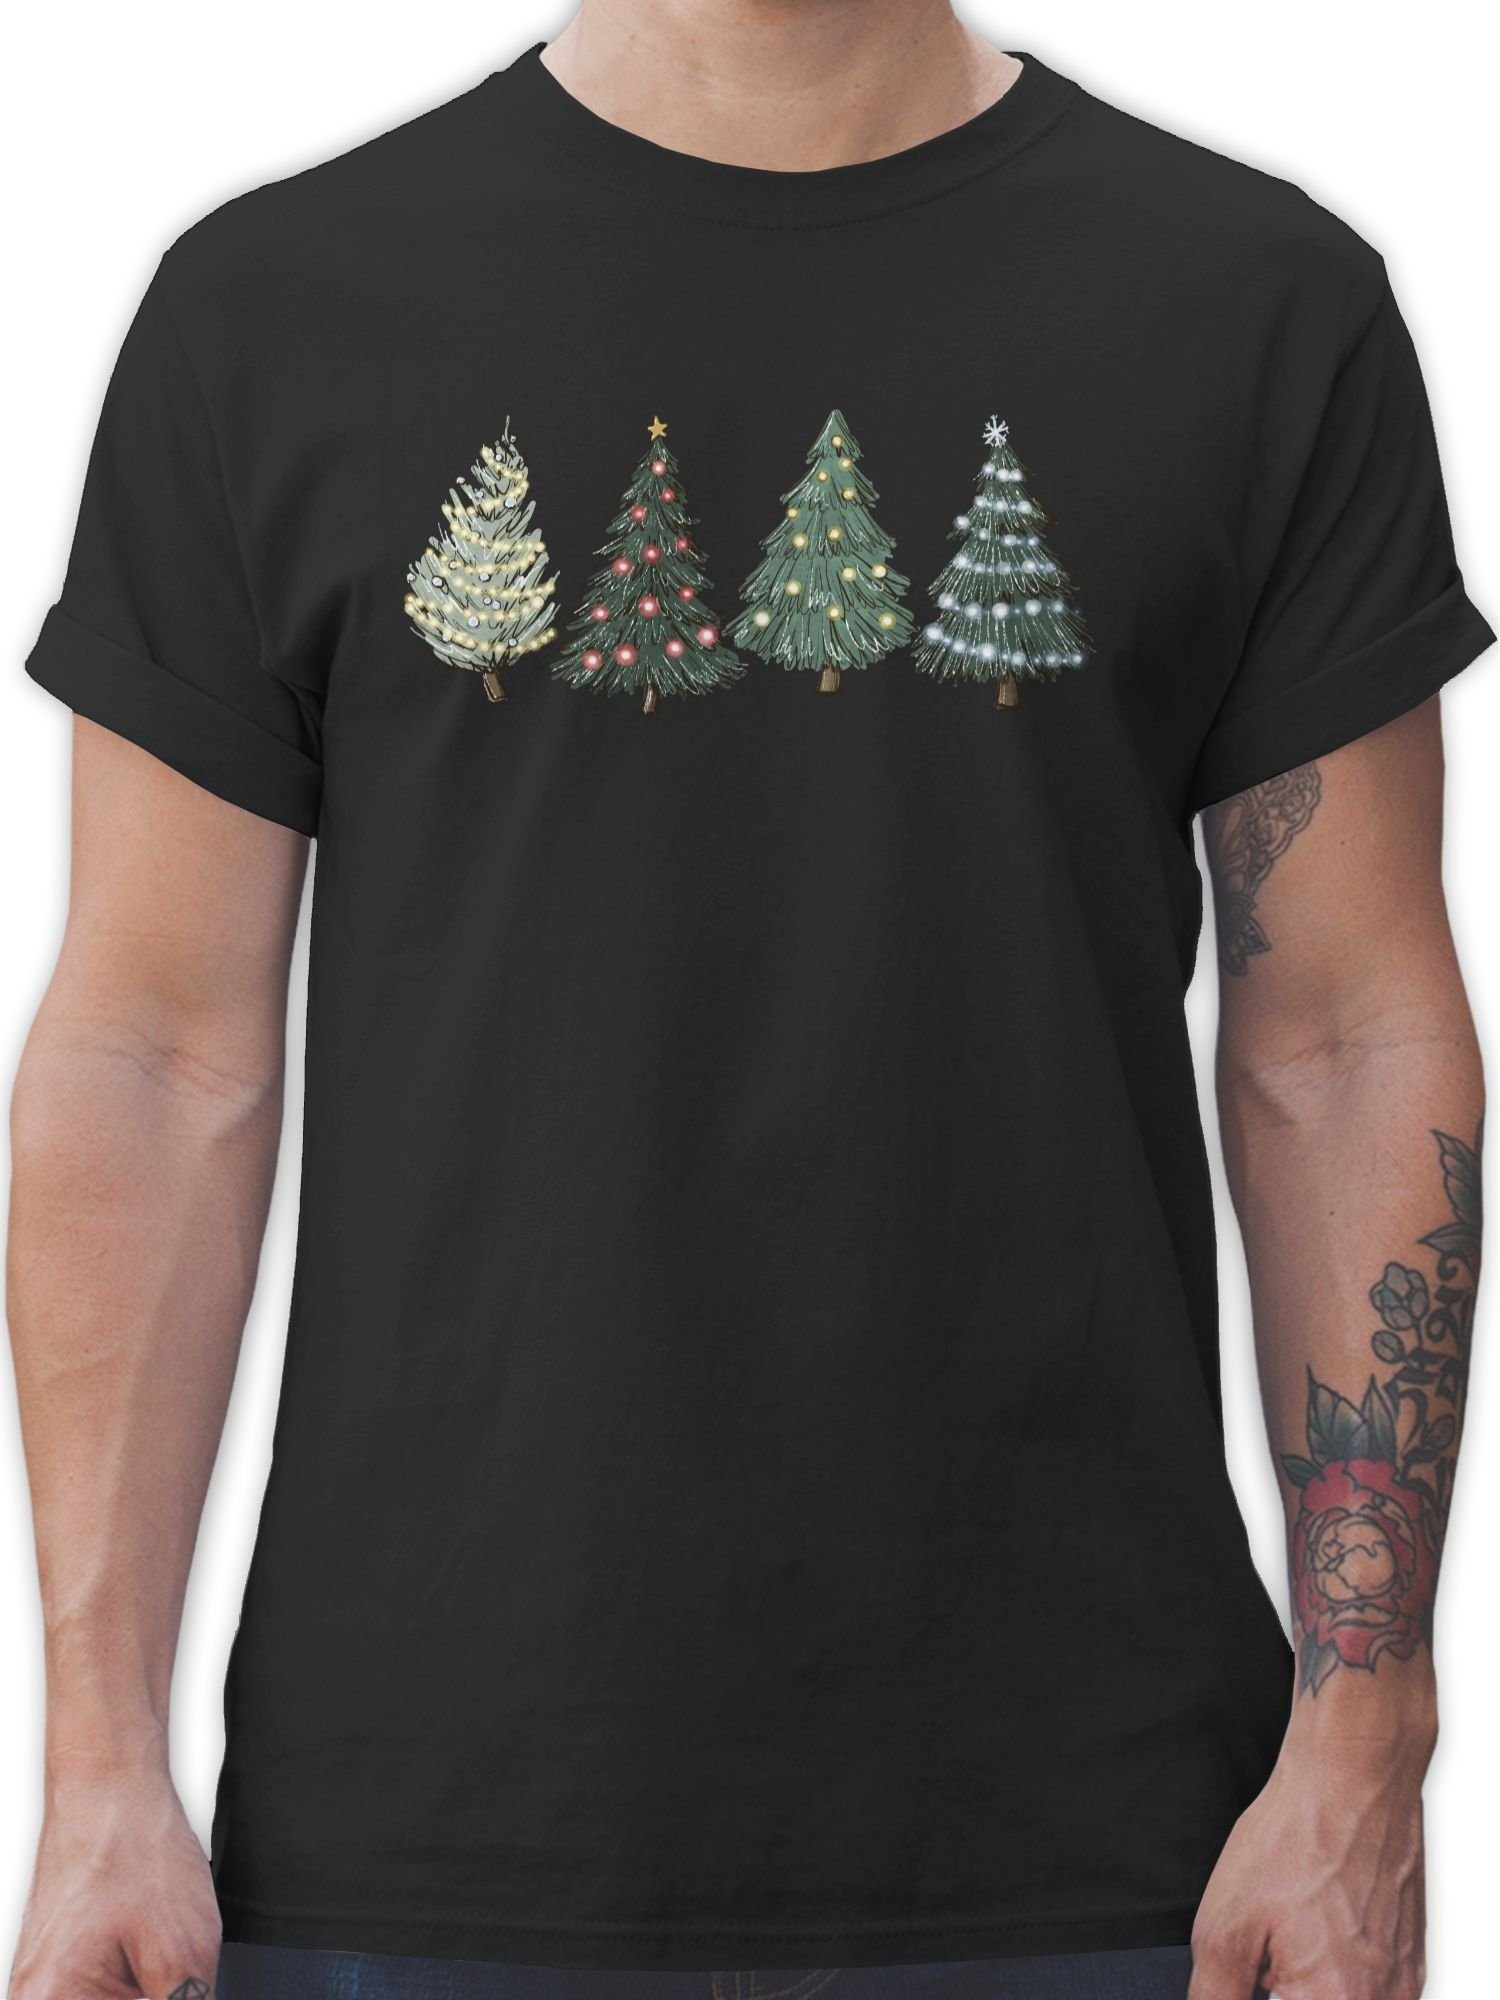 Shirtracer T-Shirt Weihnachtsbäume - Weihachten Kleidung - Herren Premium T-Shirt weihnachtsoutfit mann - weihnachtsshirts - männer weihnachts tshirt 01 Schwarz